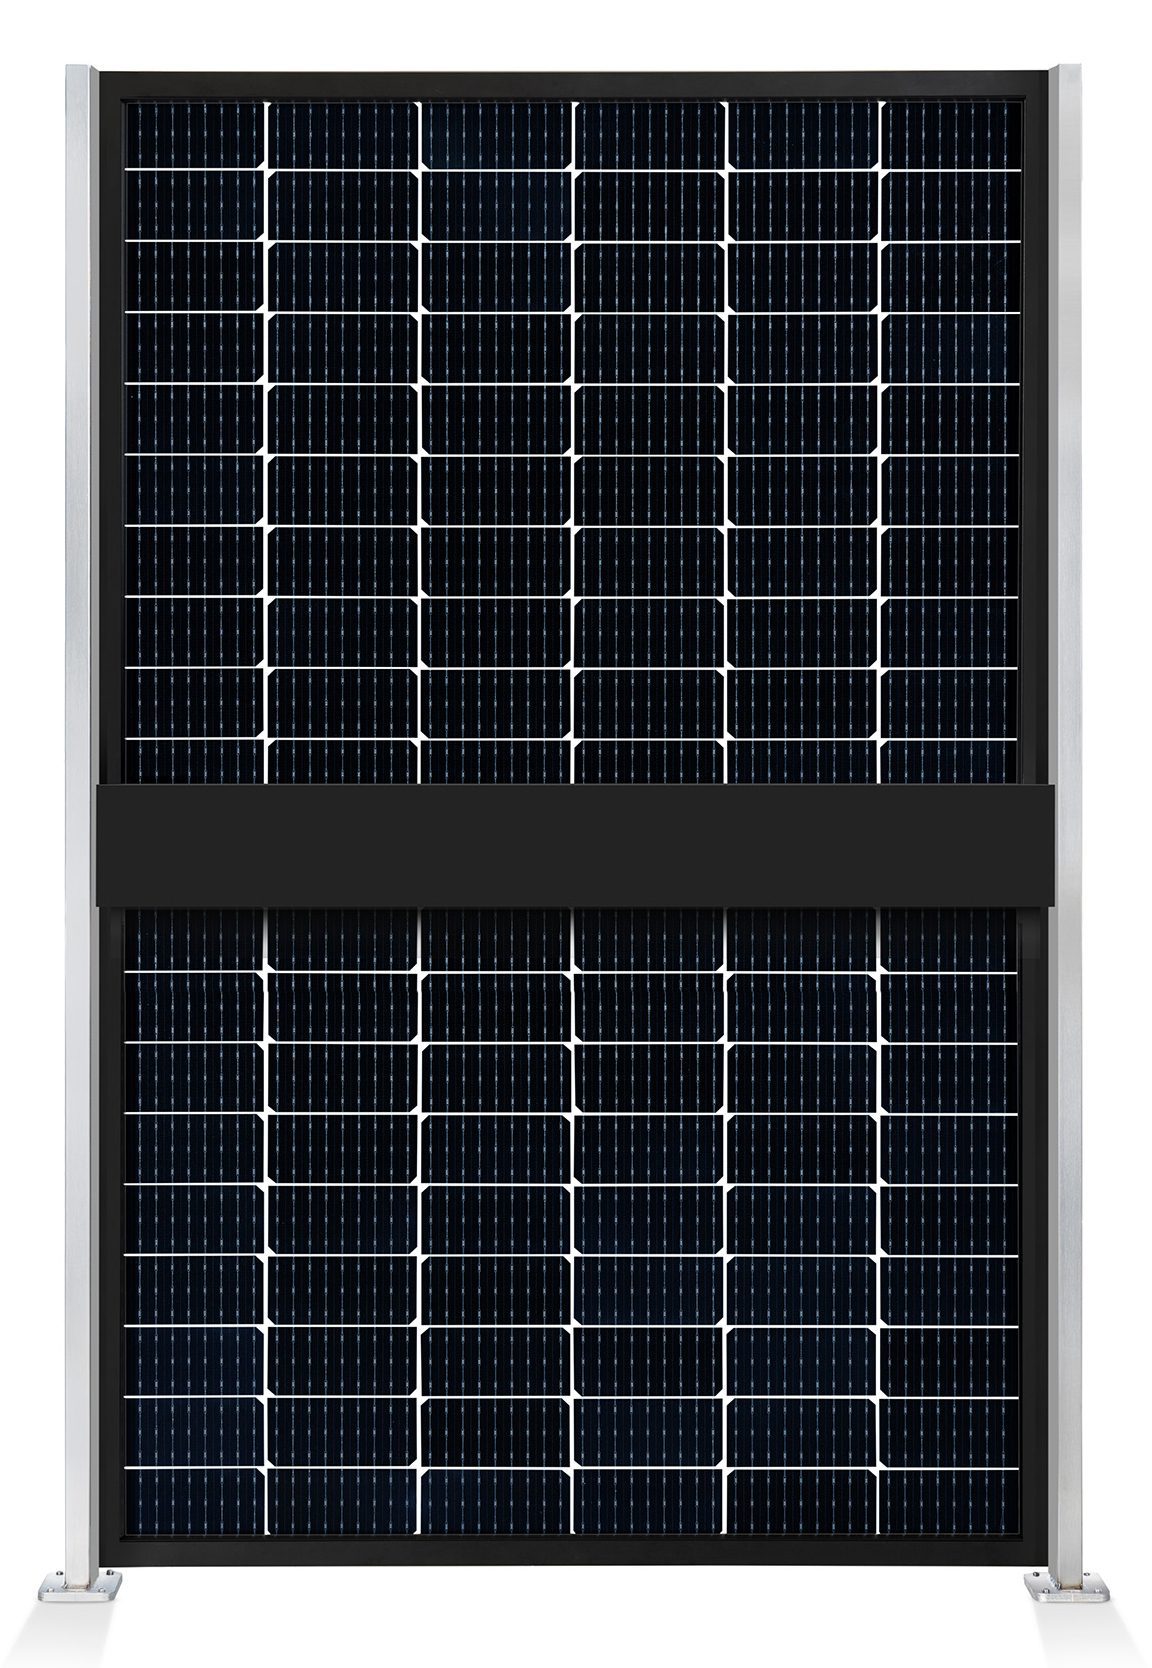 ausschnitt_0000_element-solar-sichtschutz-pv-photovoltaik-zaun-collection-hutter-panel-transparent-pfosten-edelstahl-rue.jpg